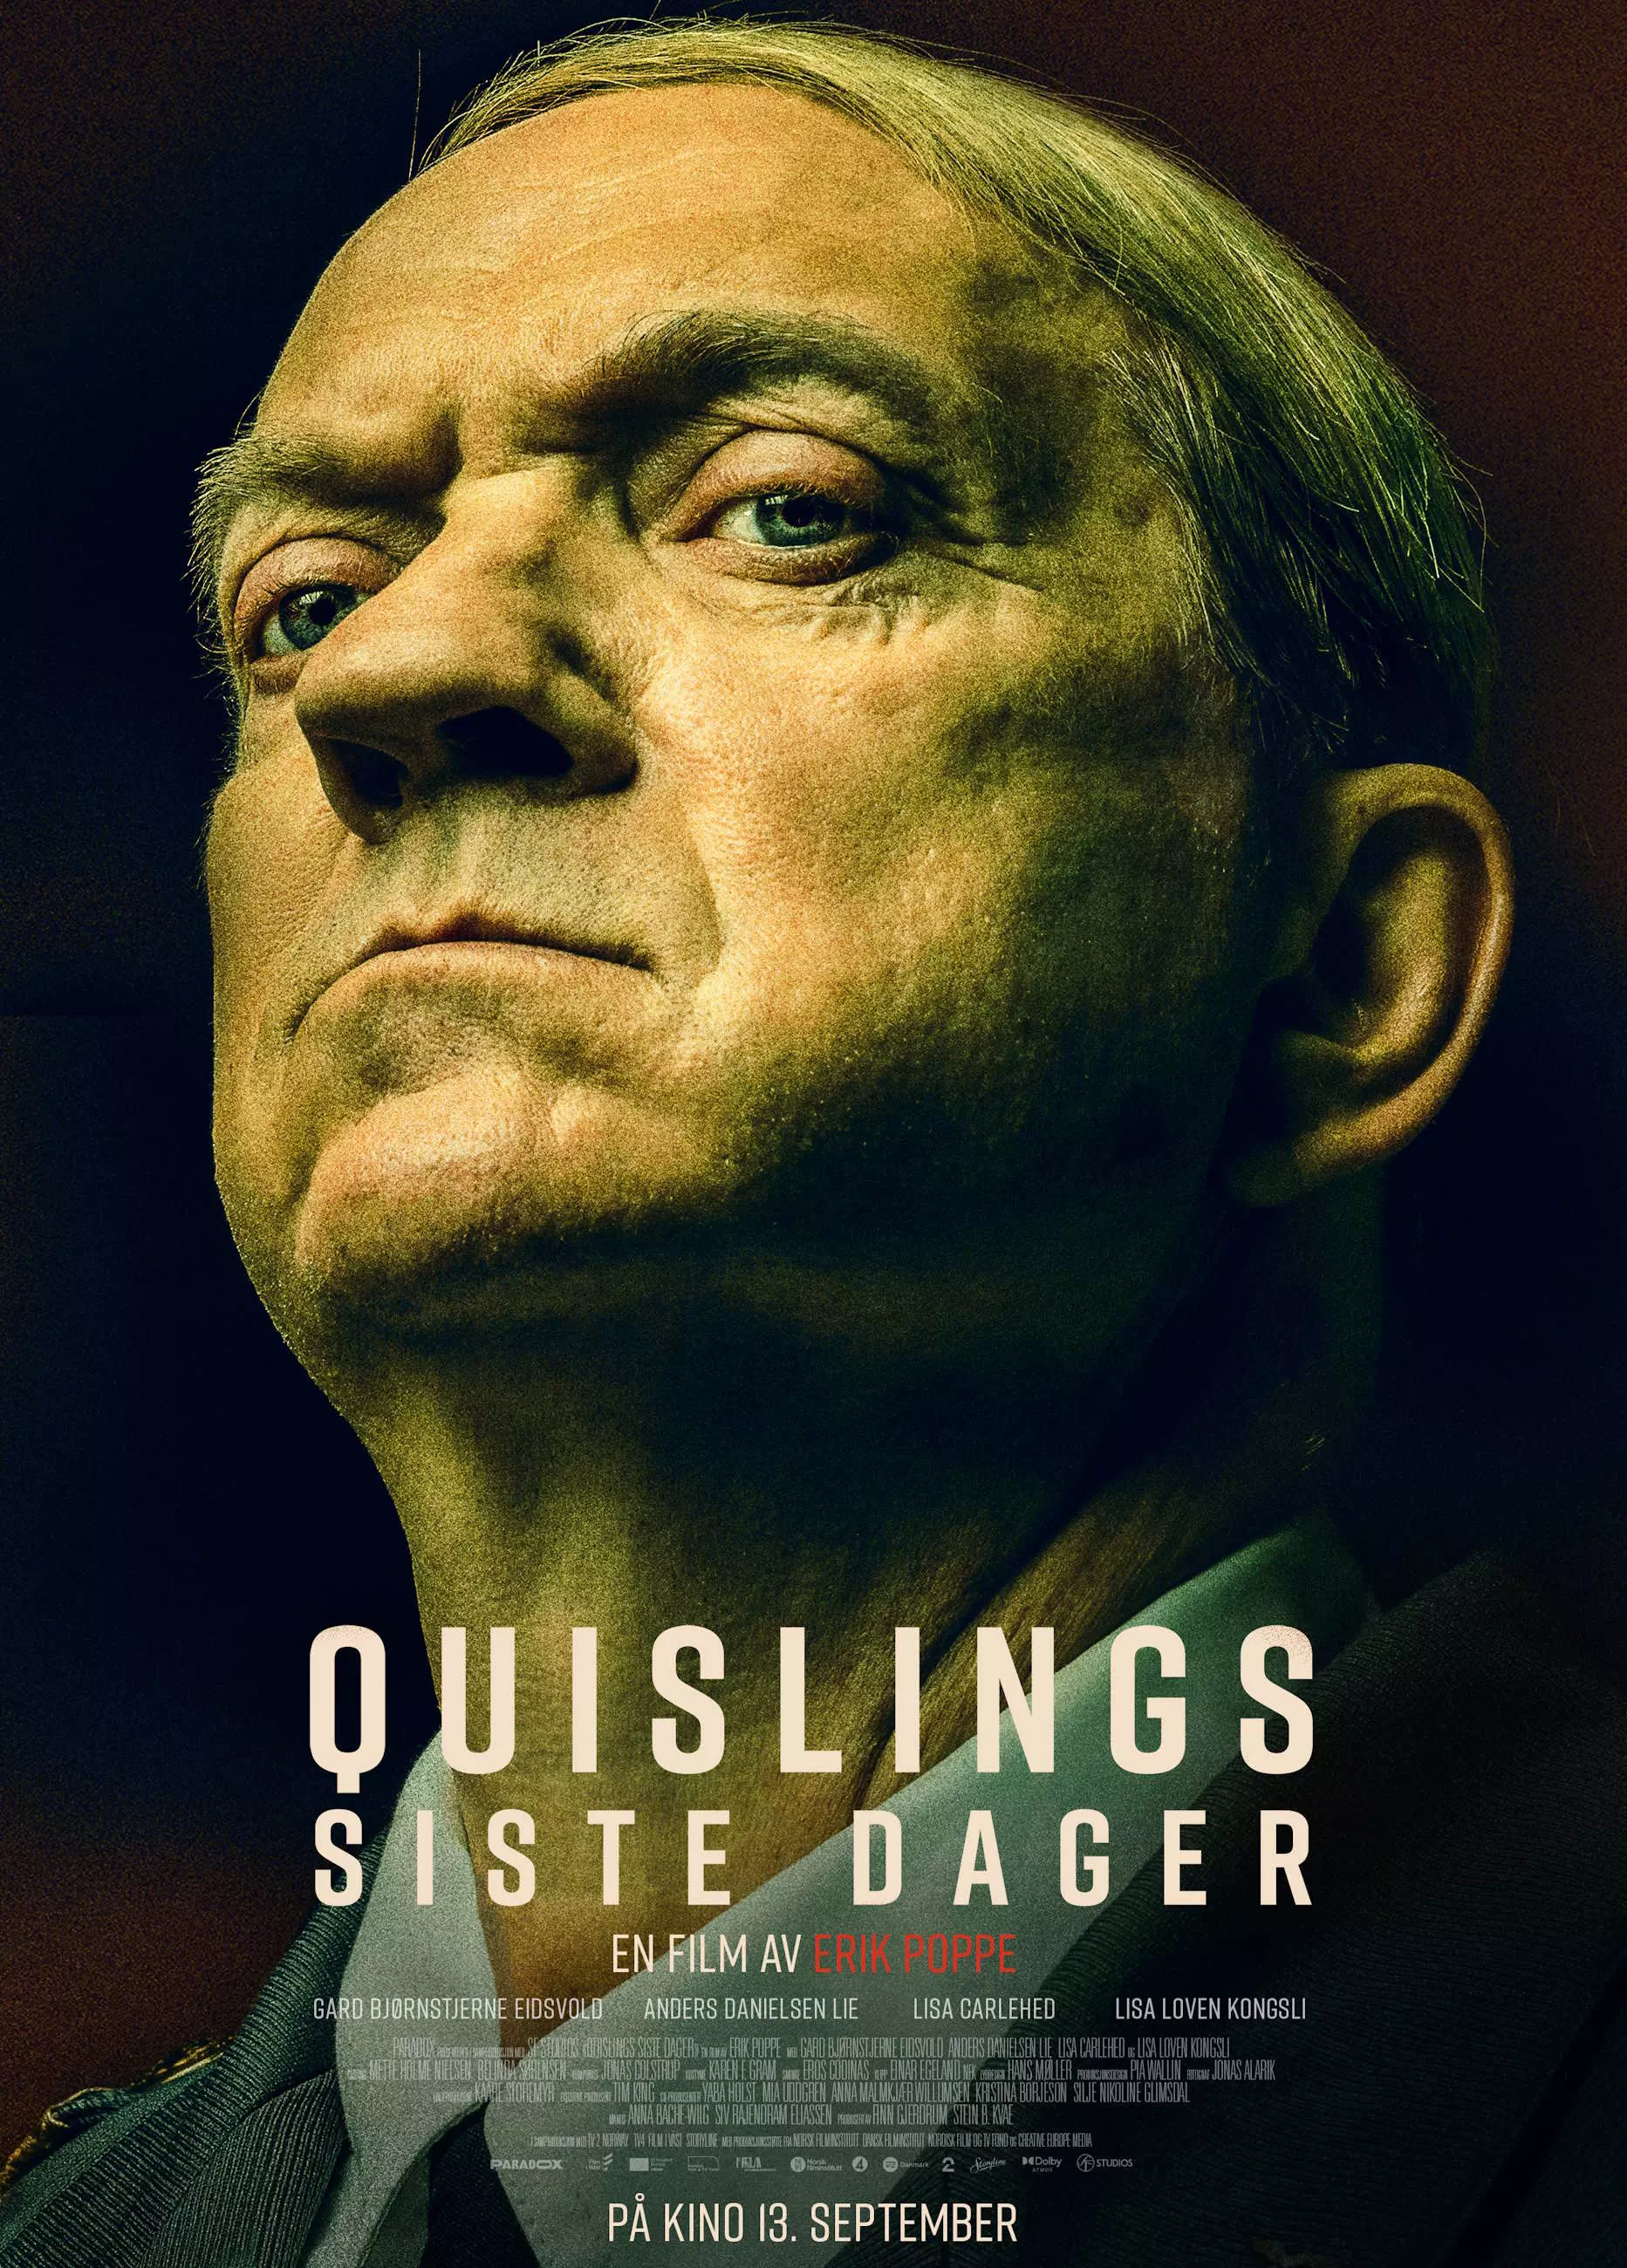 Filmplakat for "Quislings siste dager" med et nærbilde av en mann som stirrer bestemt. 